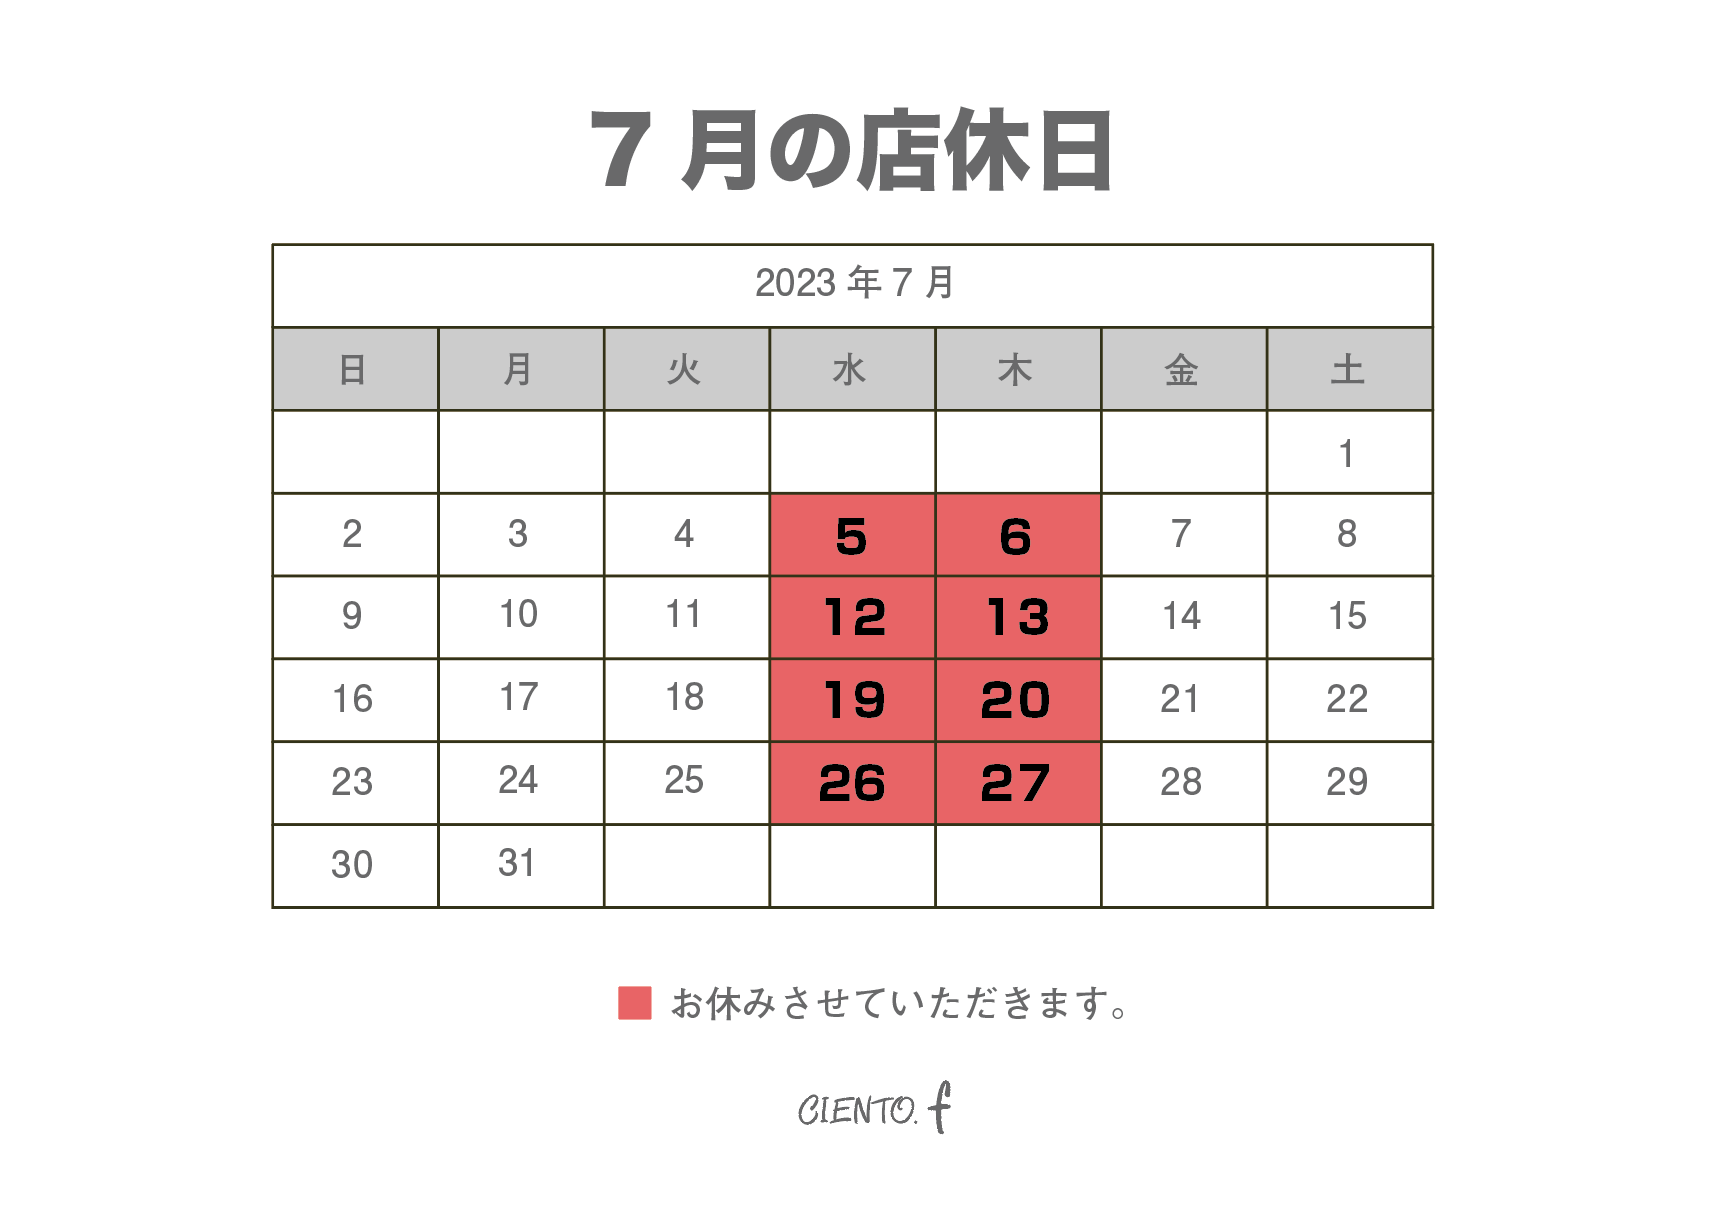 7月19日(水),7月20日(木)は店休日とさせていただきます。